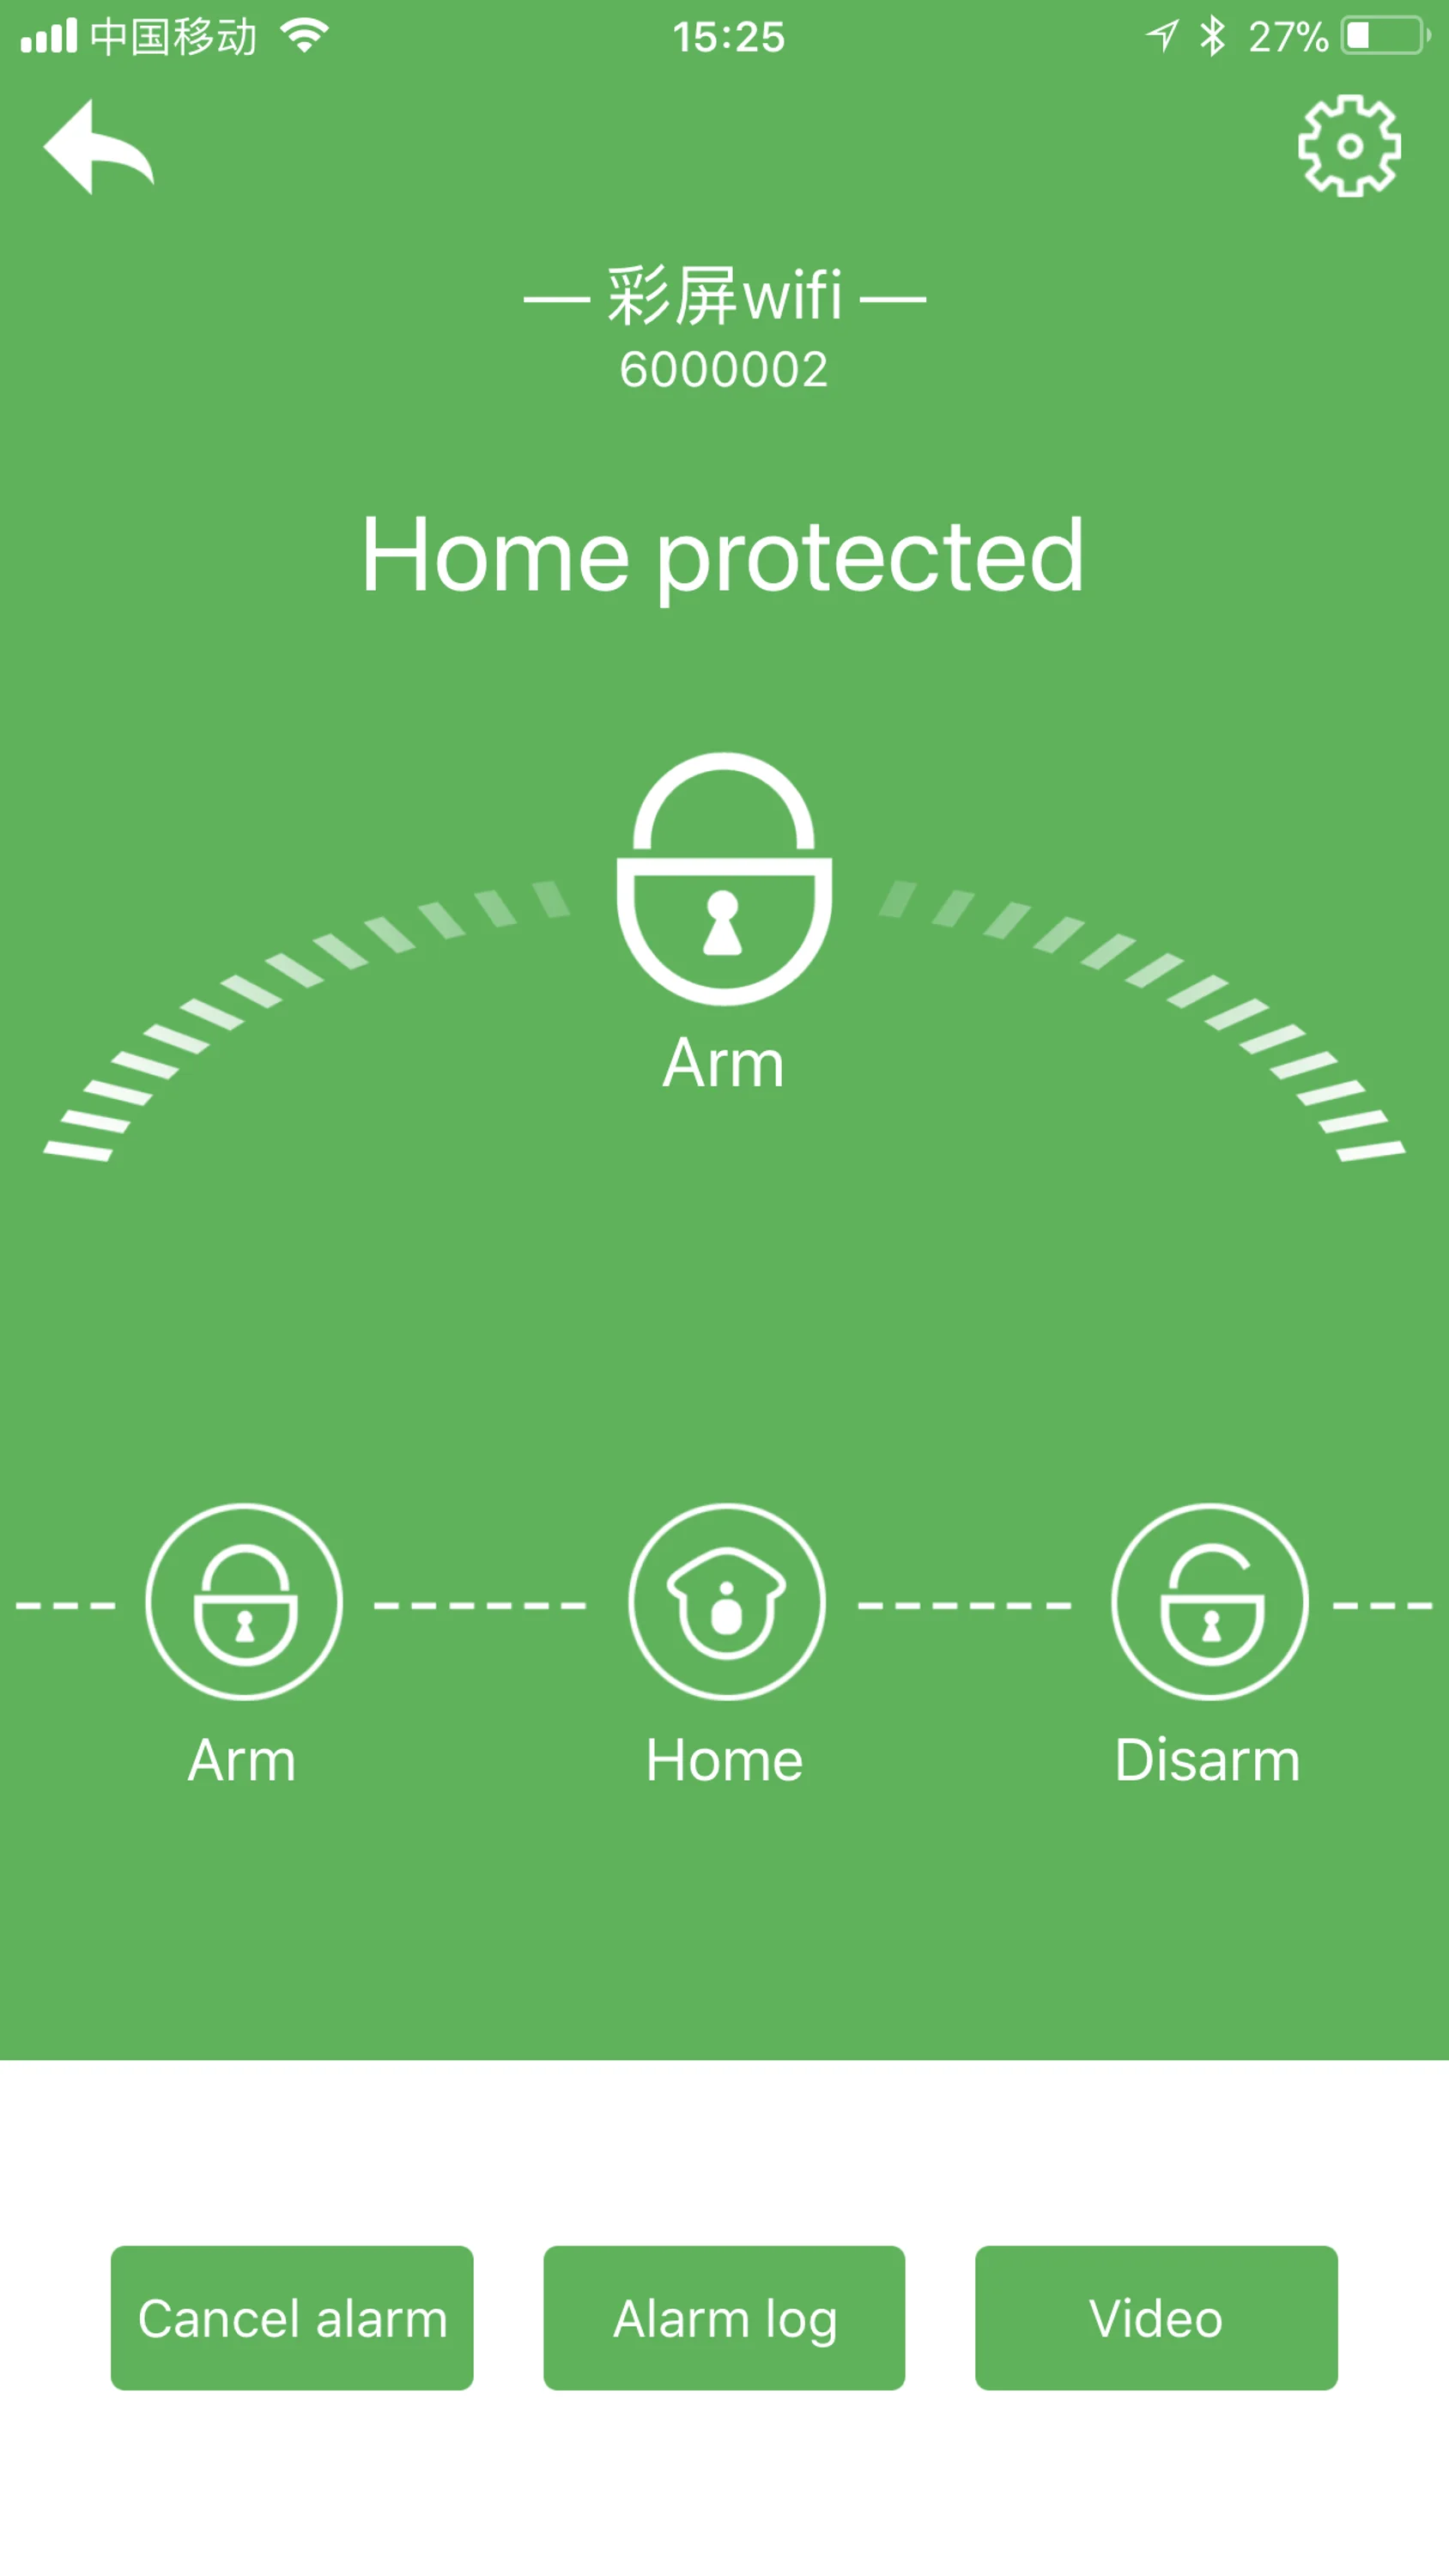 433Mhz English French Text Menu HA-VGW Wifi Alarm GSM Alarm System Wifi Smart Home Security Burglar Alarm With 8 Wired Zone